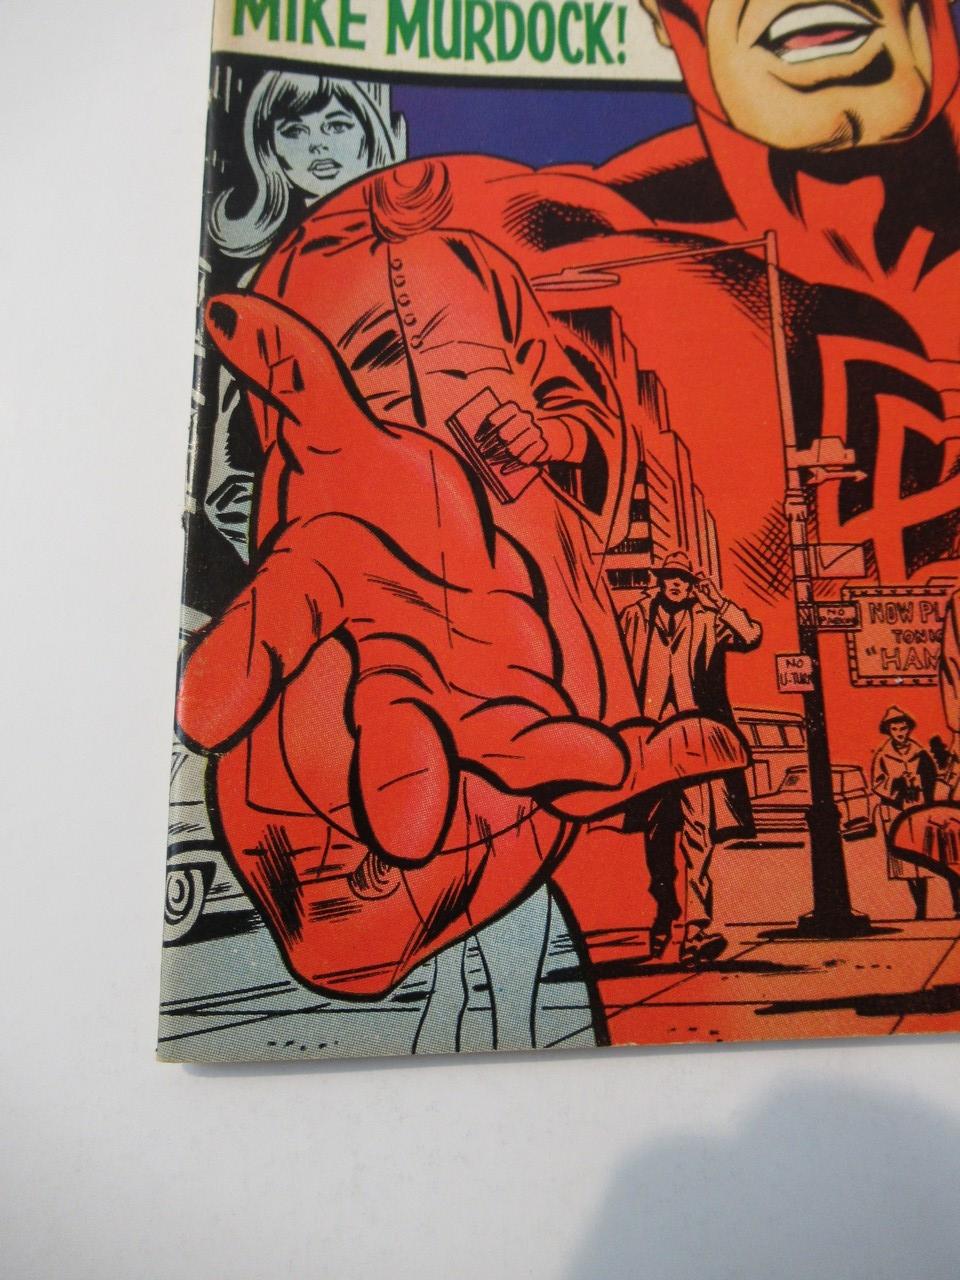 Daredevil #41 (1968)